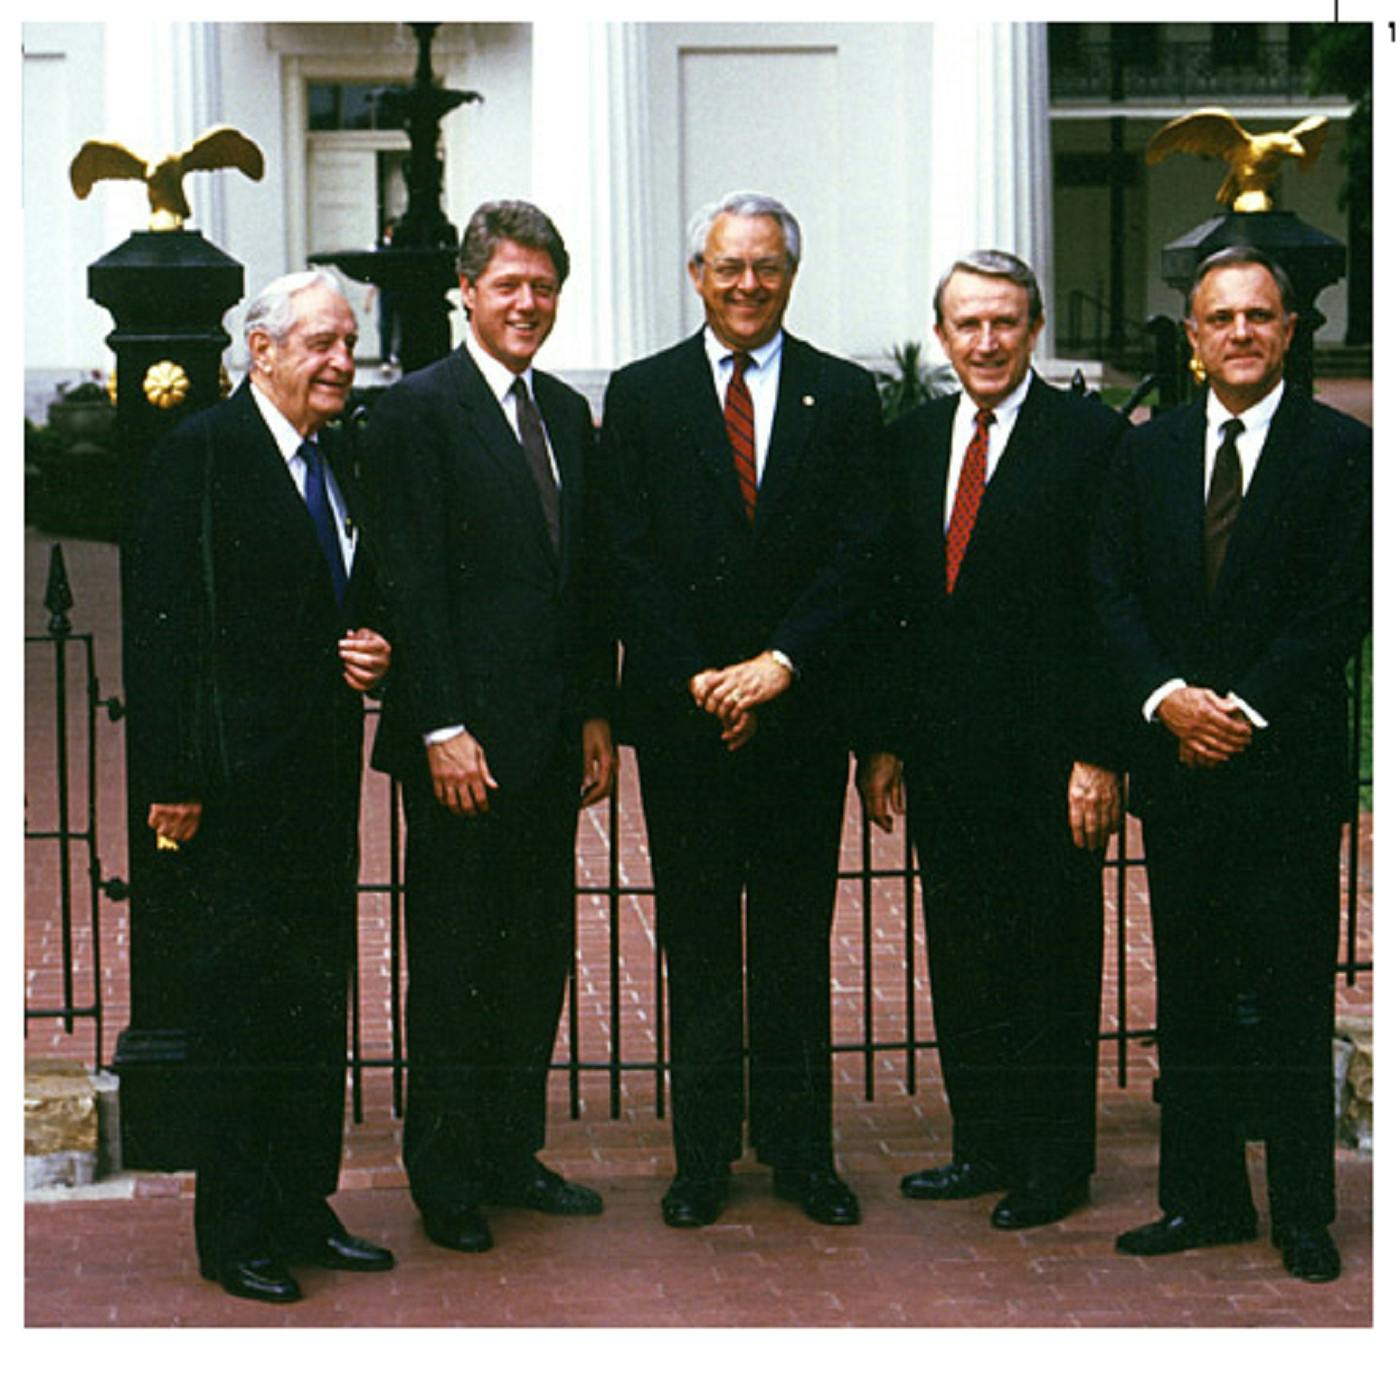 Judge Lincoln, Orval Faubus and Bill Clinton, Millard Fillmore